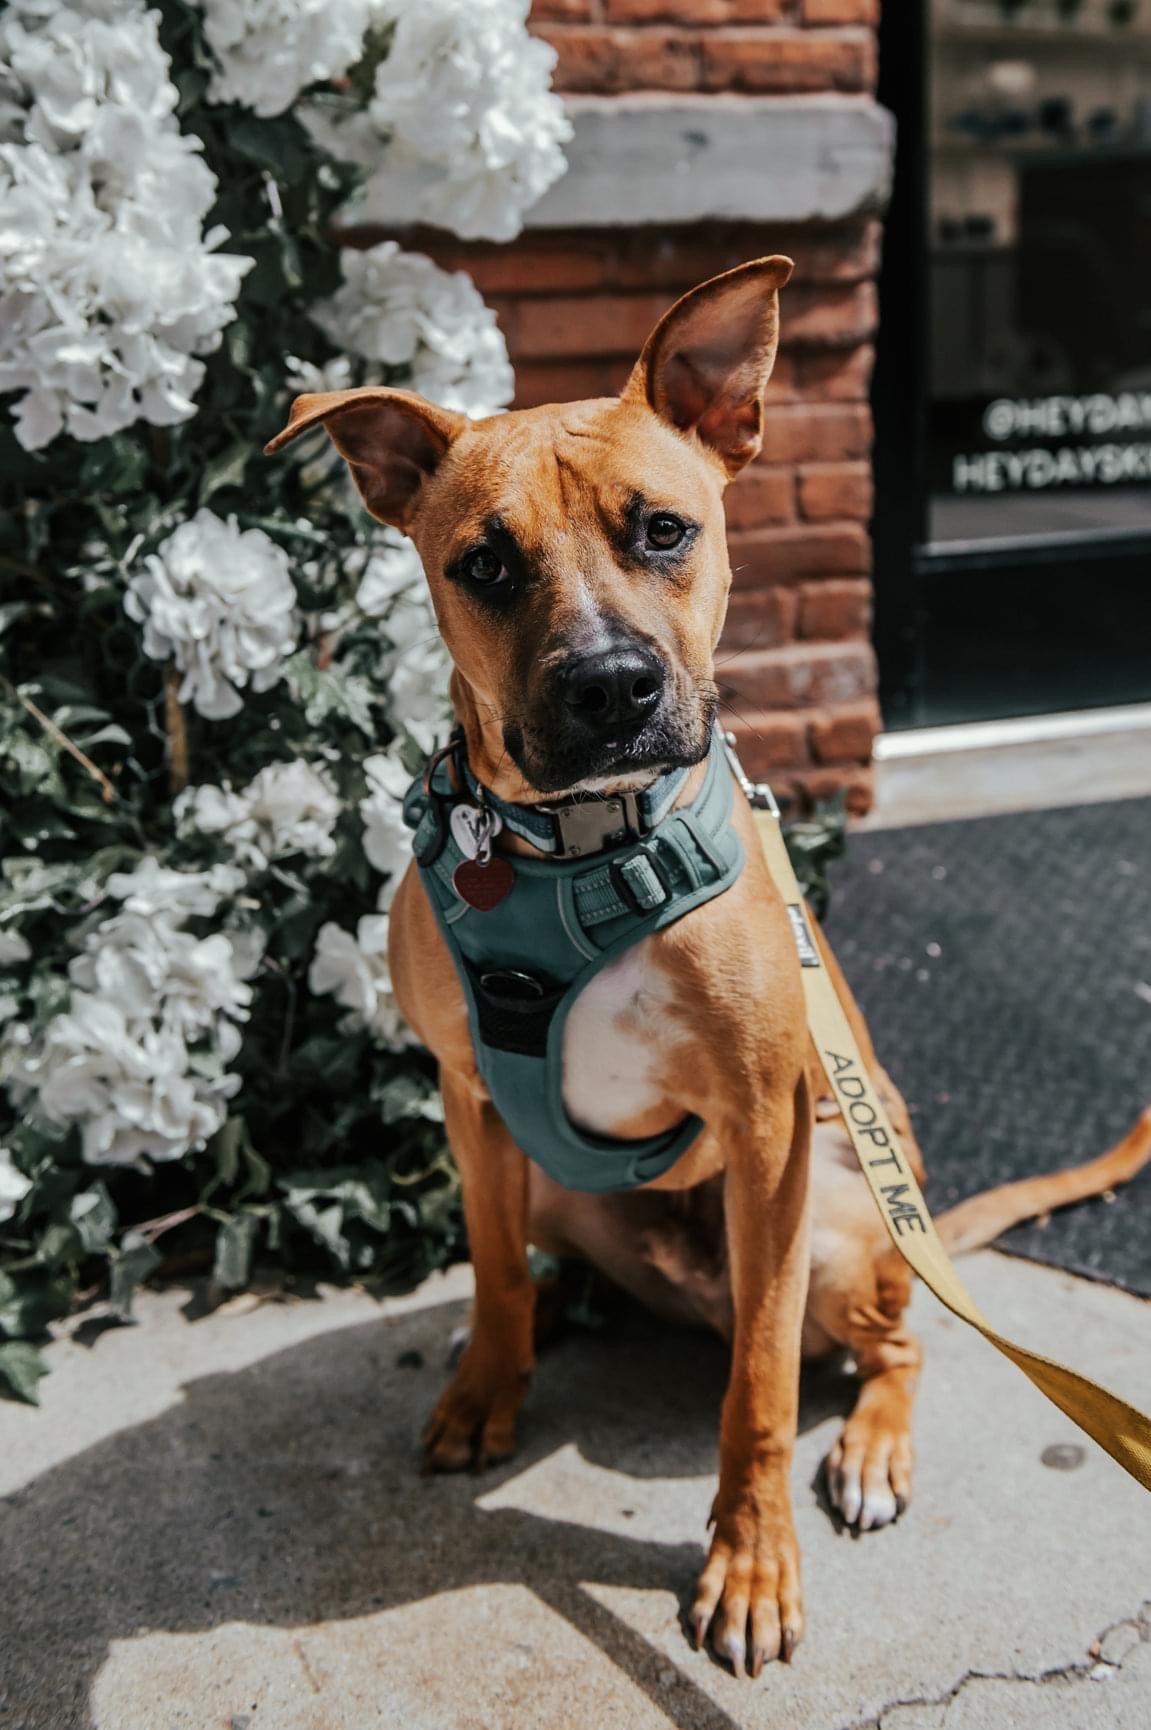 adoptable Dog in New York, NY named Vespar (TX)